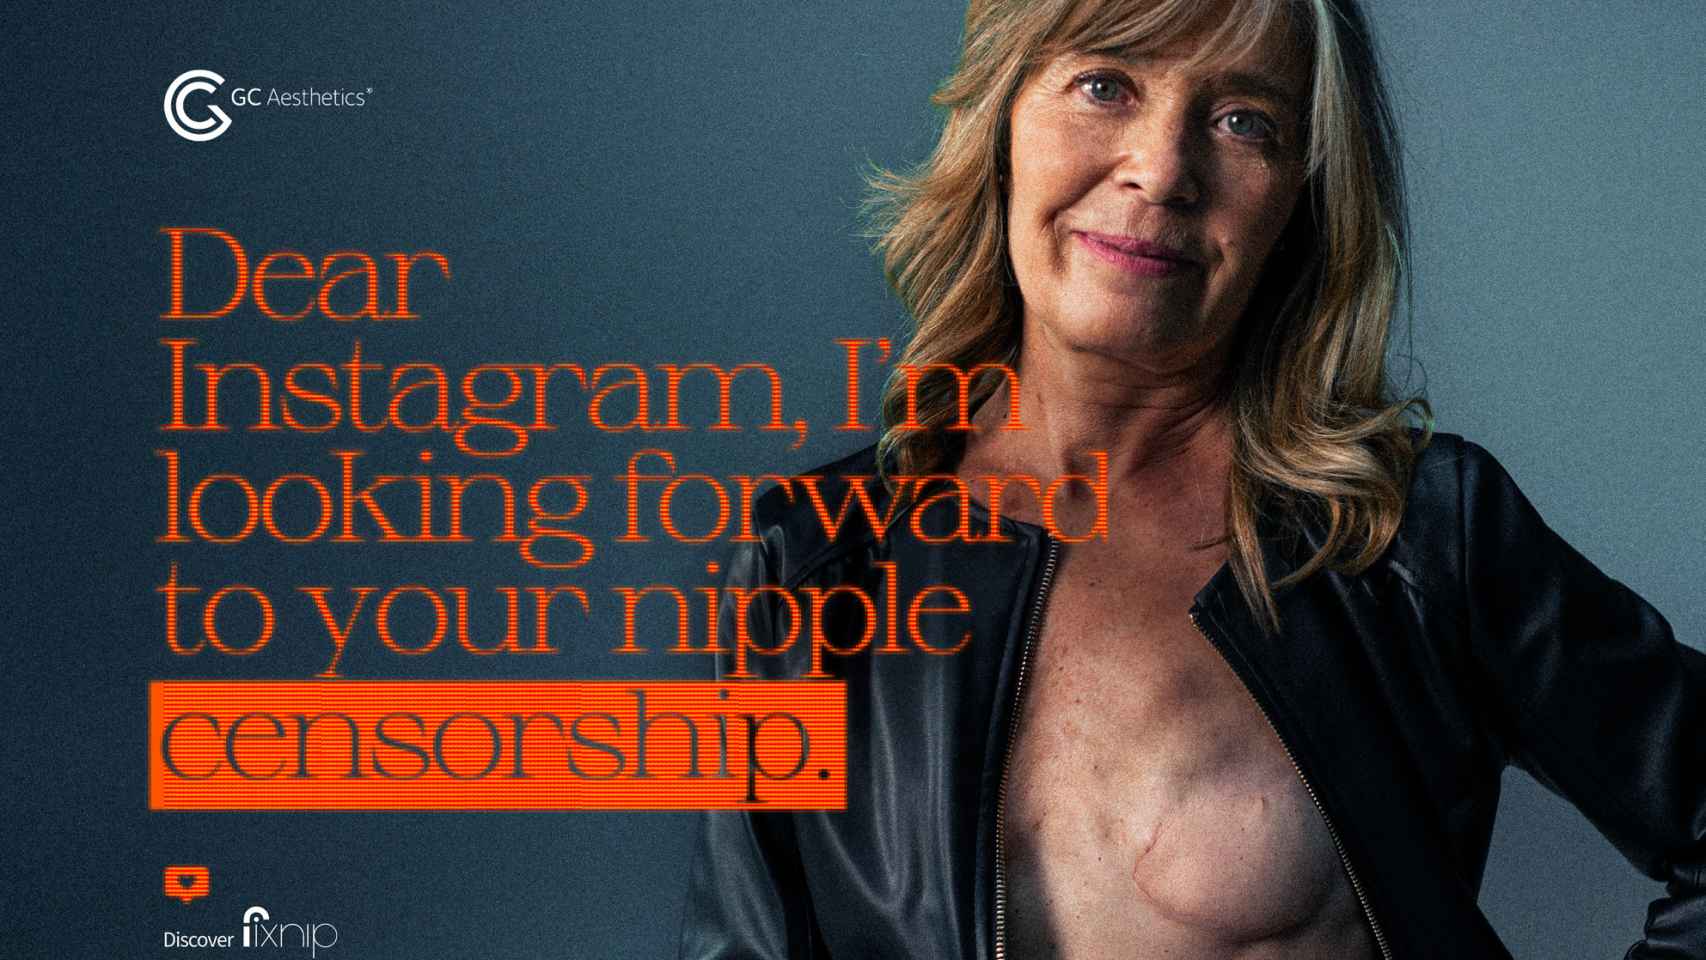 Imagen de la campaña en la que se muestra a una mujer sin pezón retando a Instagram.